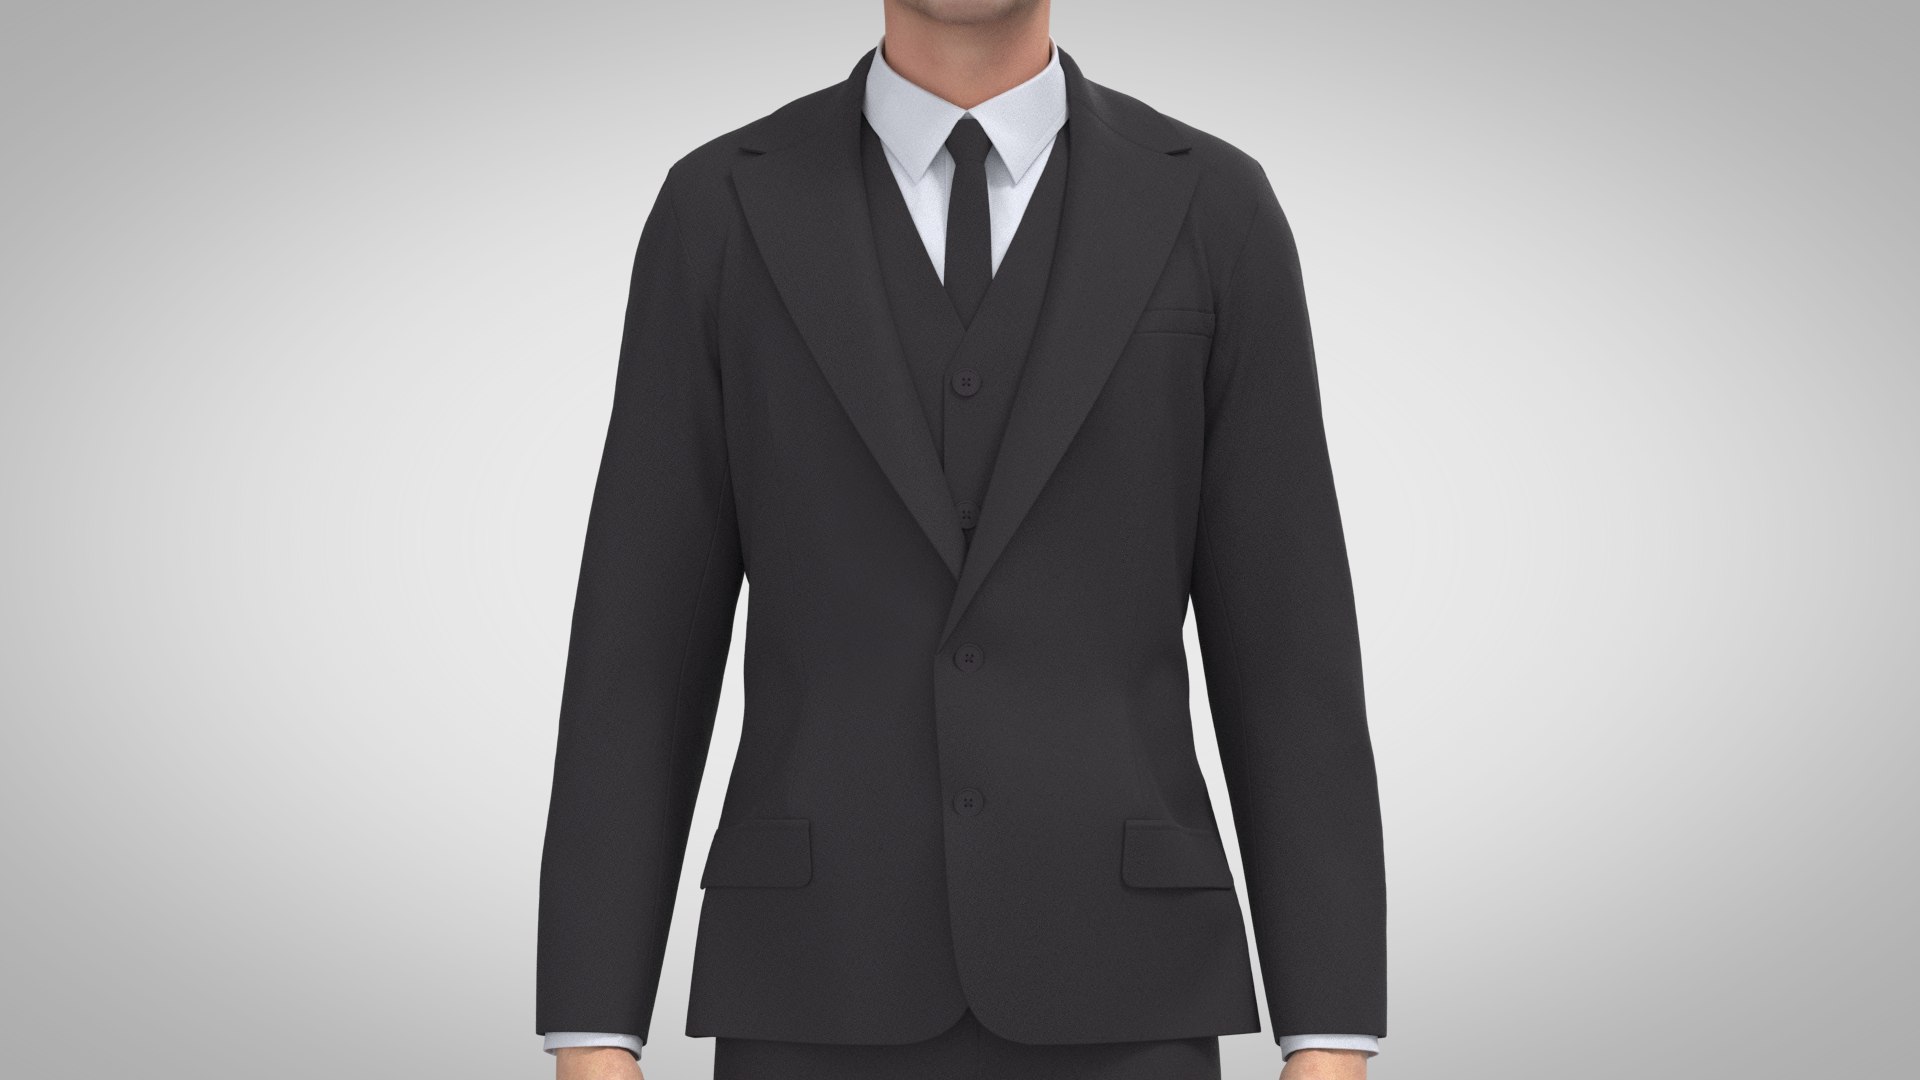 Men Suit Jacket 3D model - TurboSquid 1910424